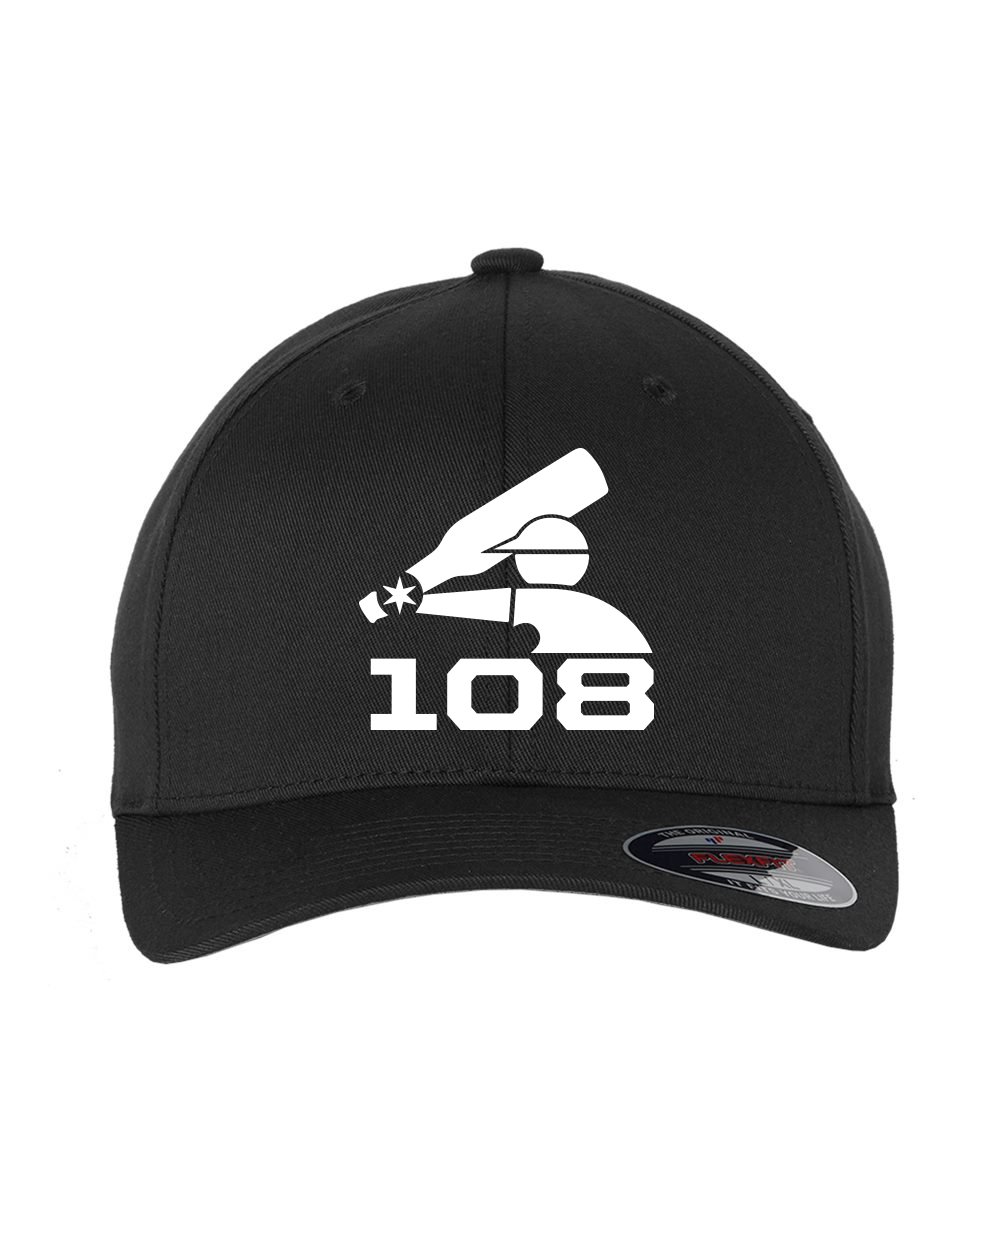 108 OG LOGO FLEXFIT HAT